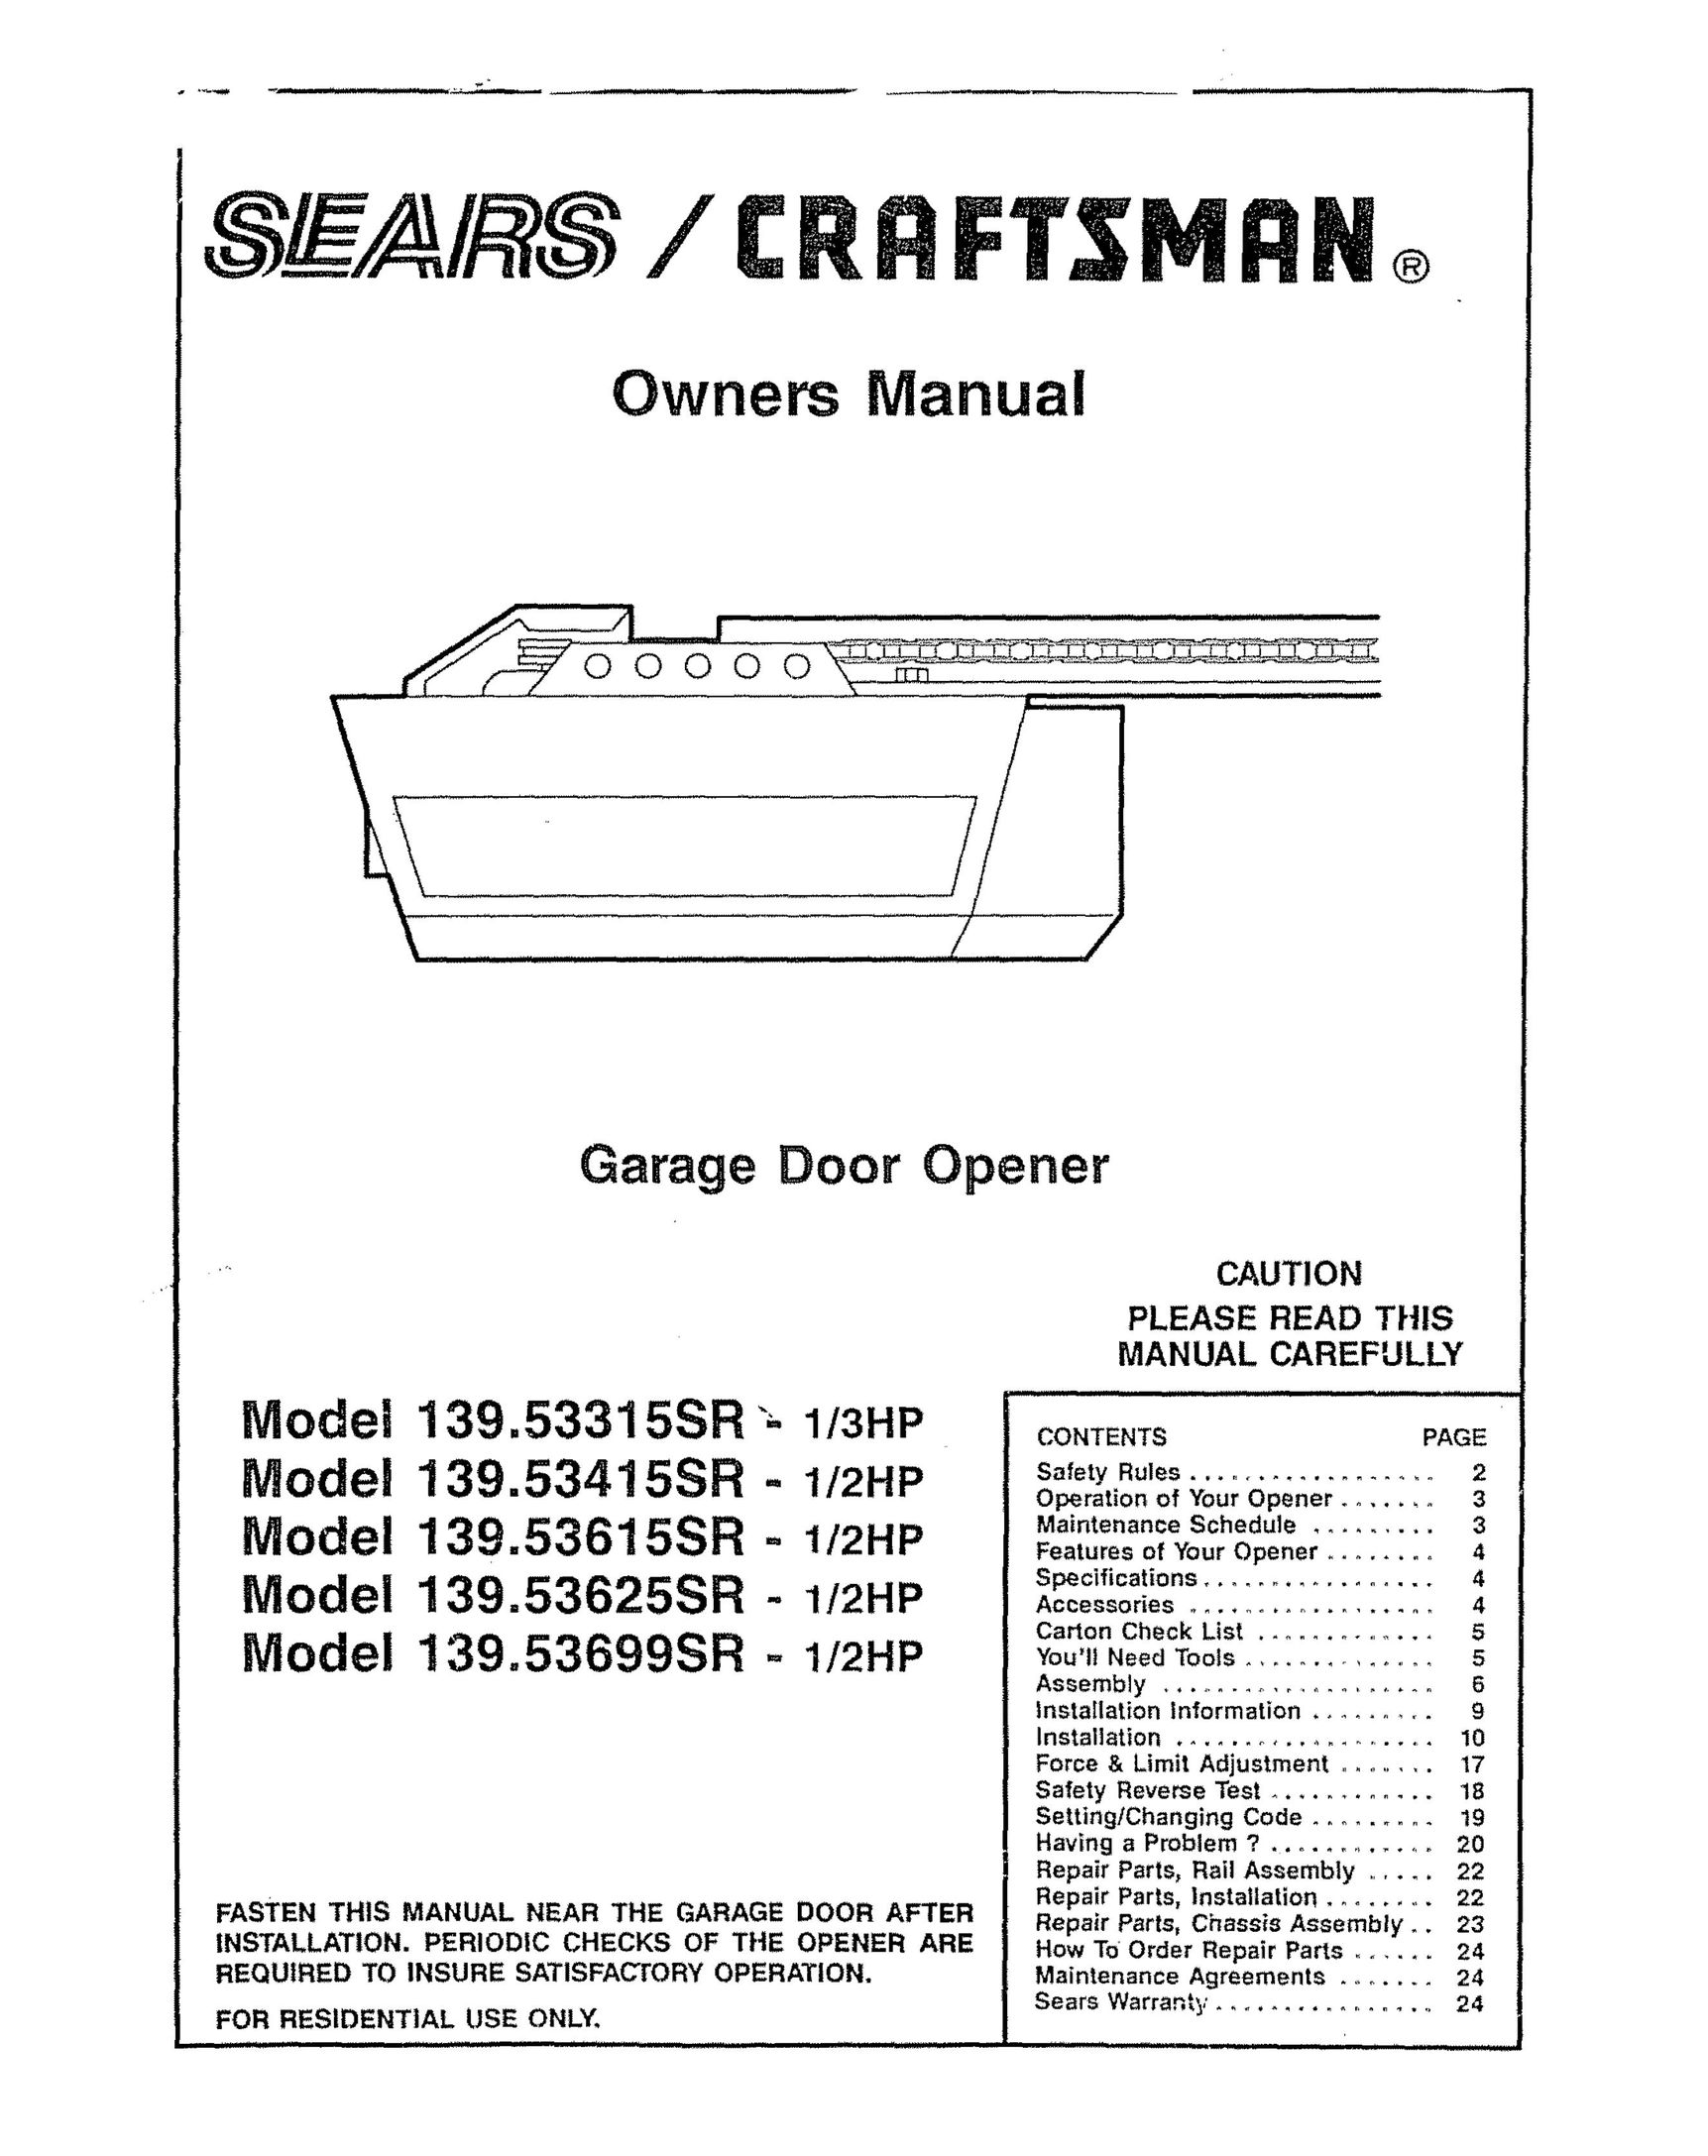 Craftsman 139.53699SR Garage Door Opener User Manual